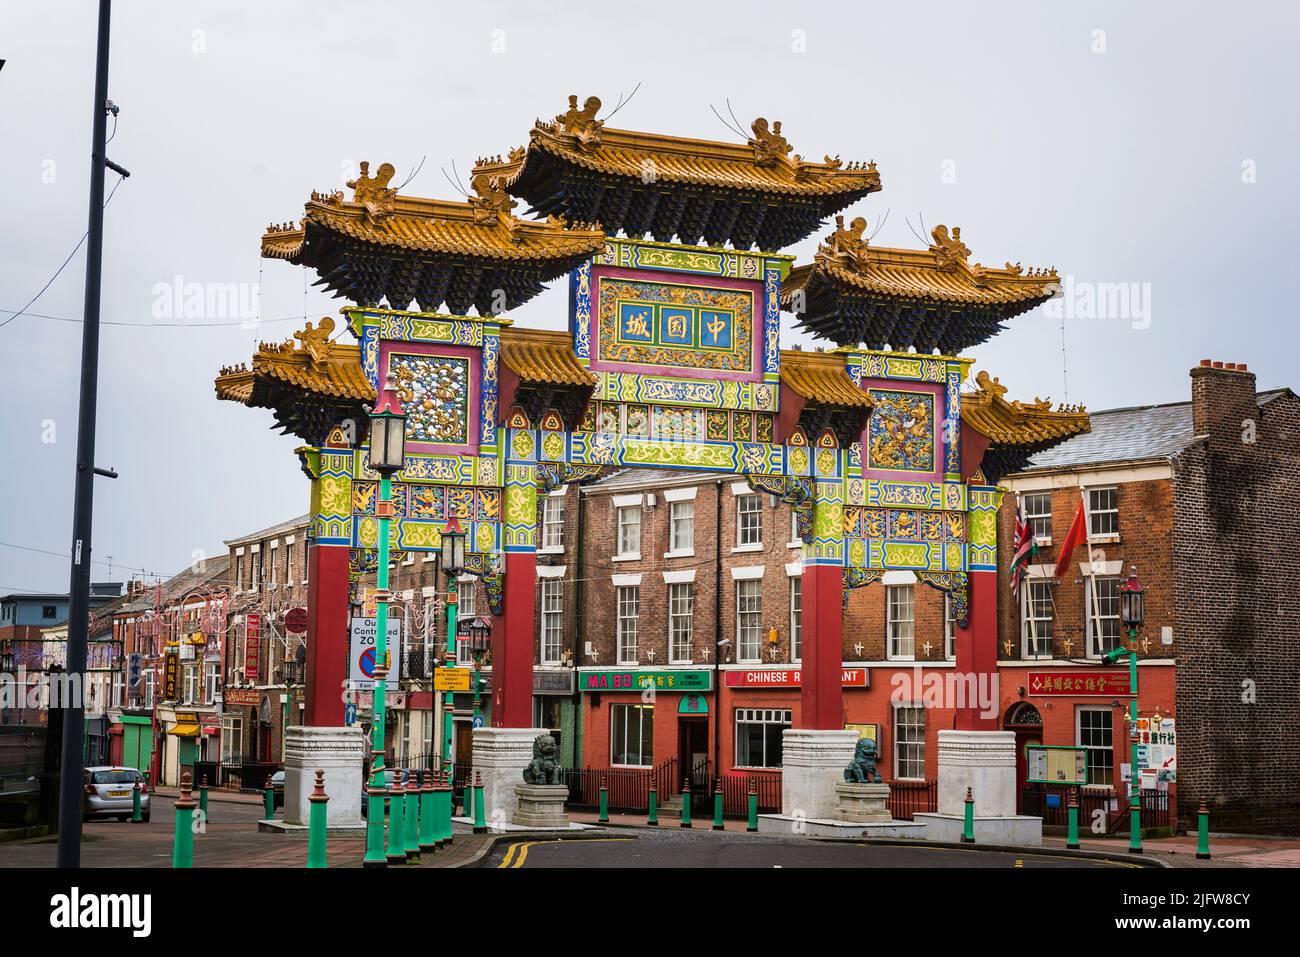 Chinatown Gate, Nelson Street. Chinatown es una zona de Liverpool que es un enclave étnico que alberga la comunidad china más antigua de Europa. Liverpool, Foto de stock